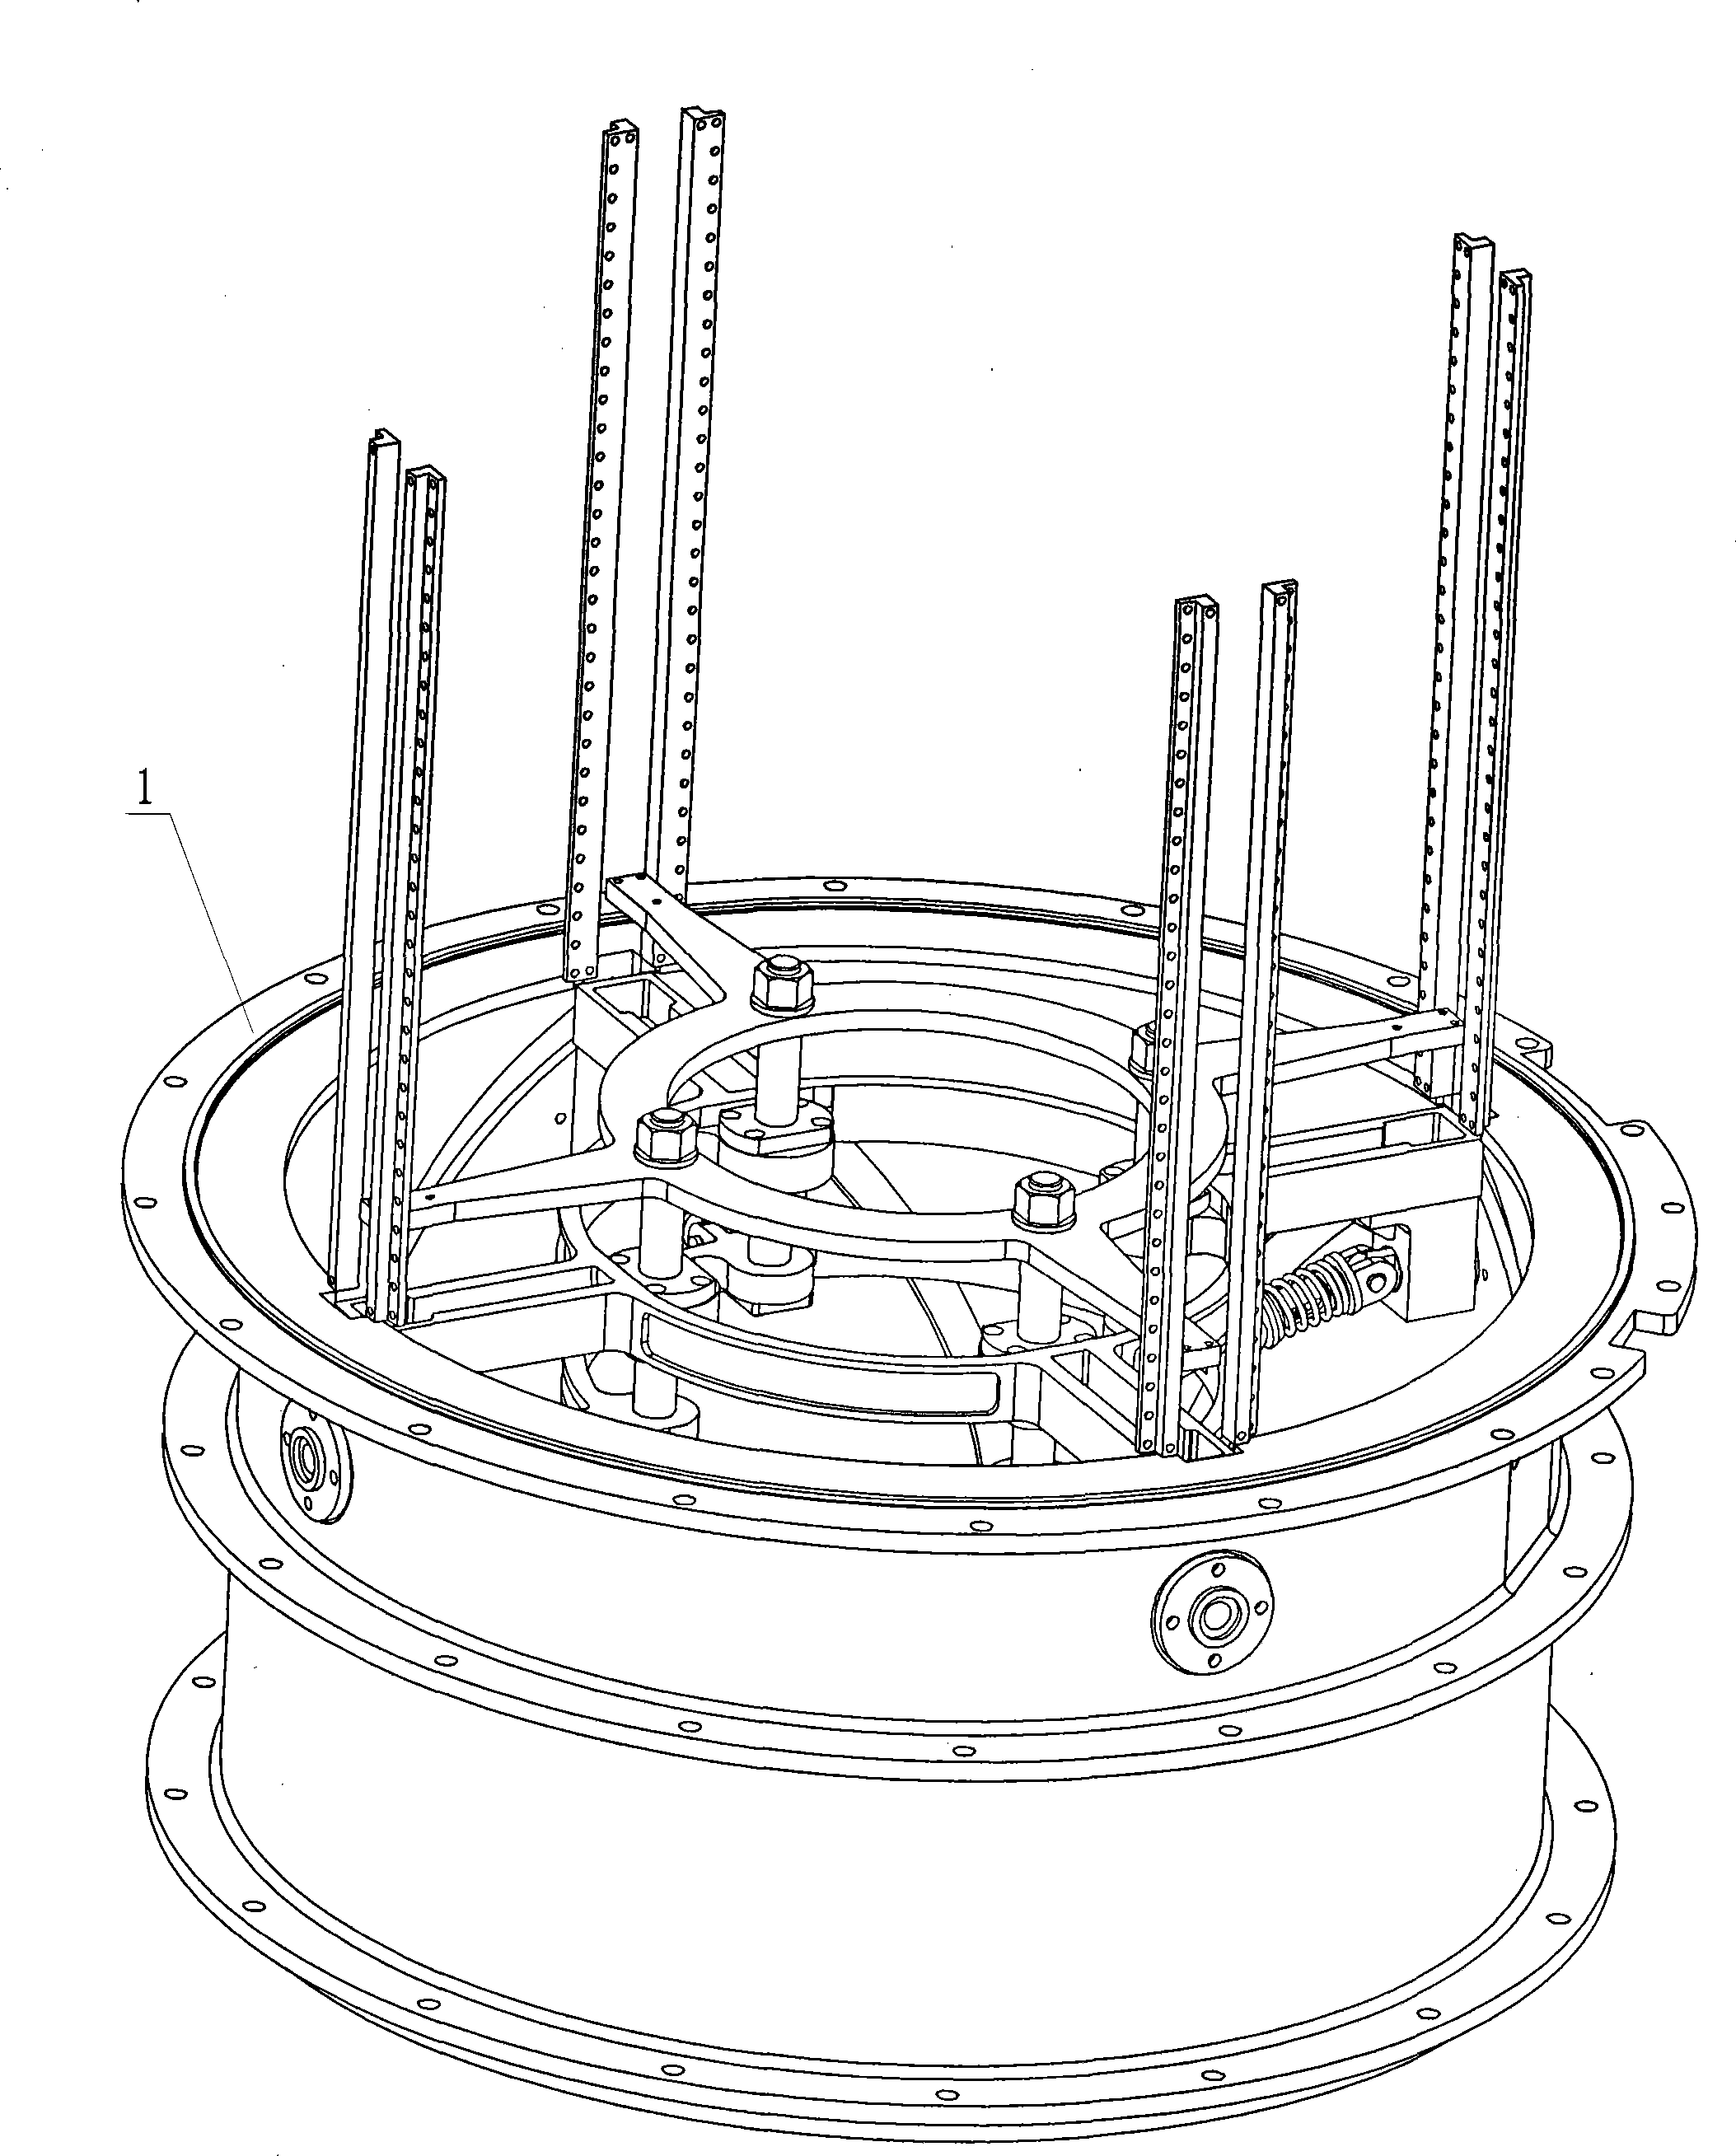 Shrinking connecting-rod locking mechanism